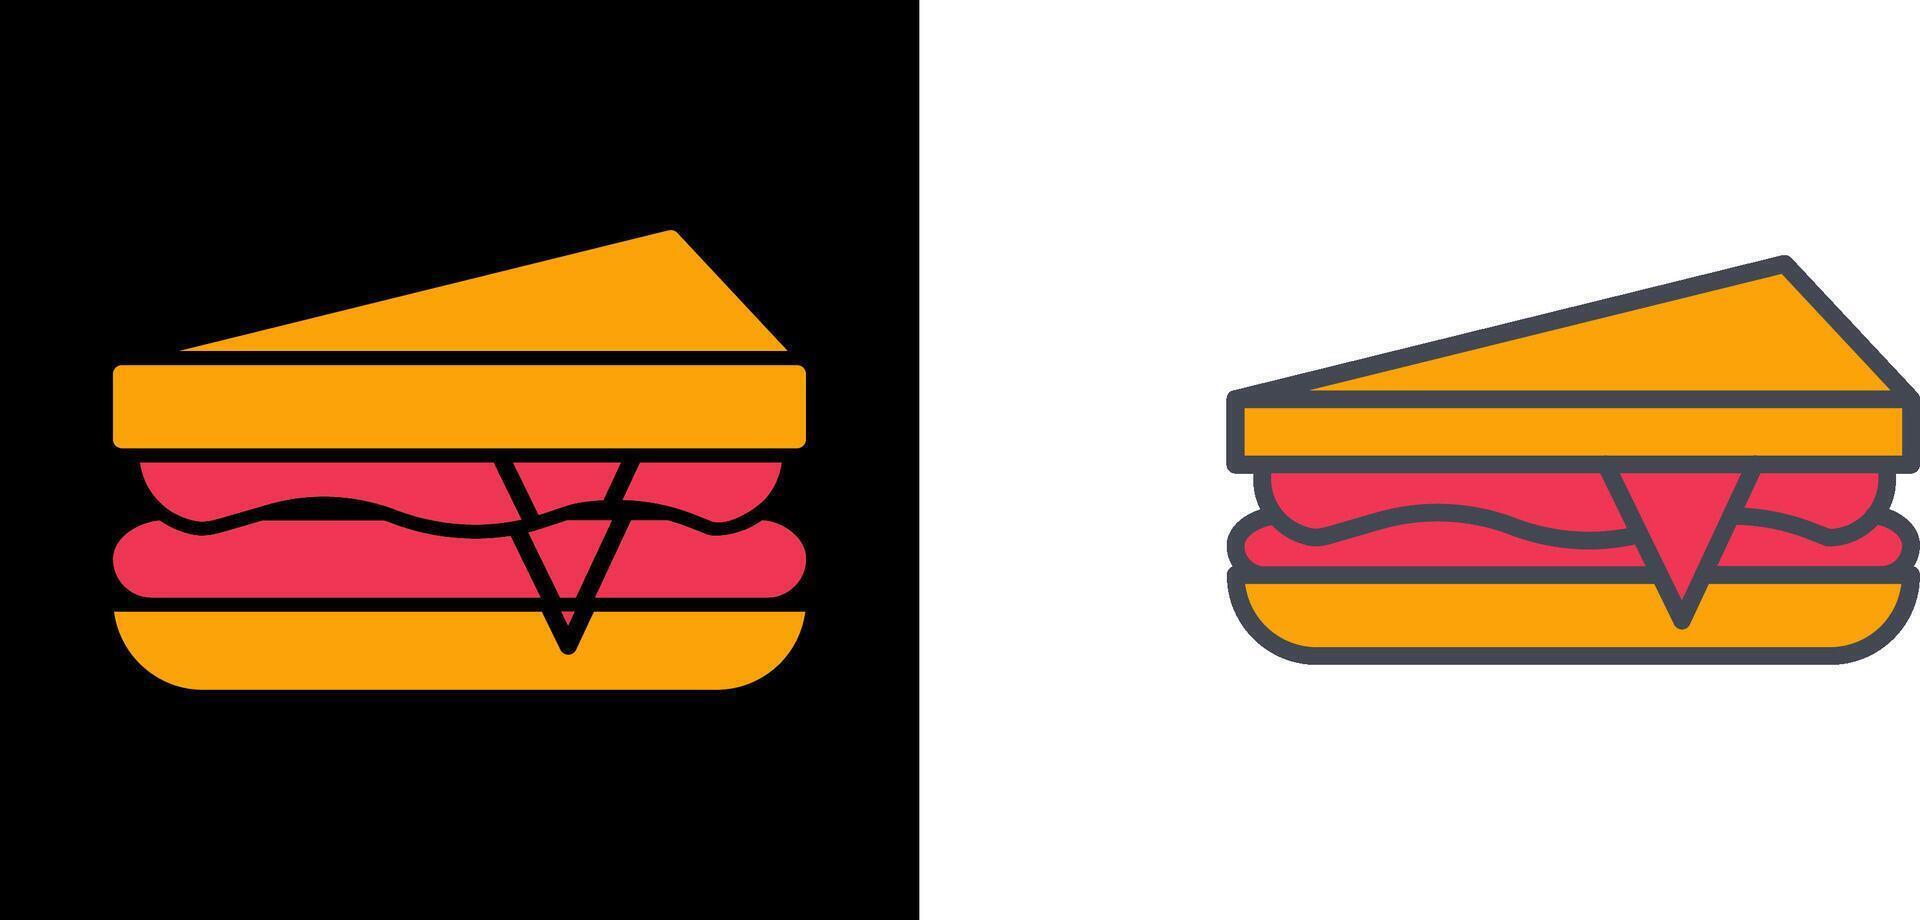 Sandwich-Icon-Design vektor